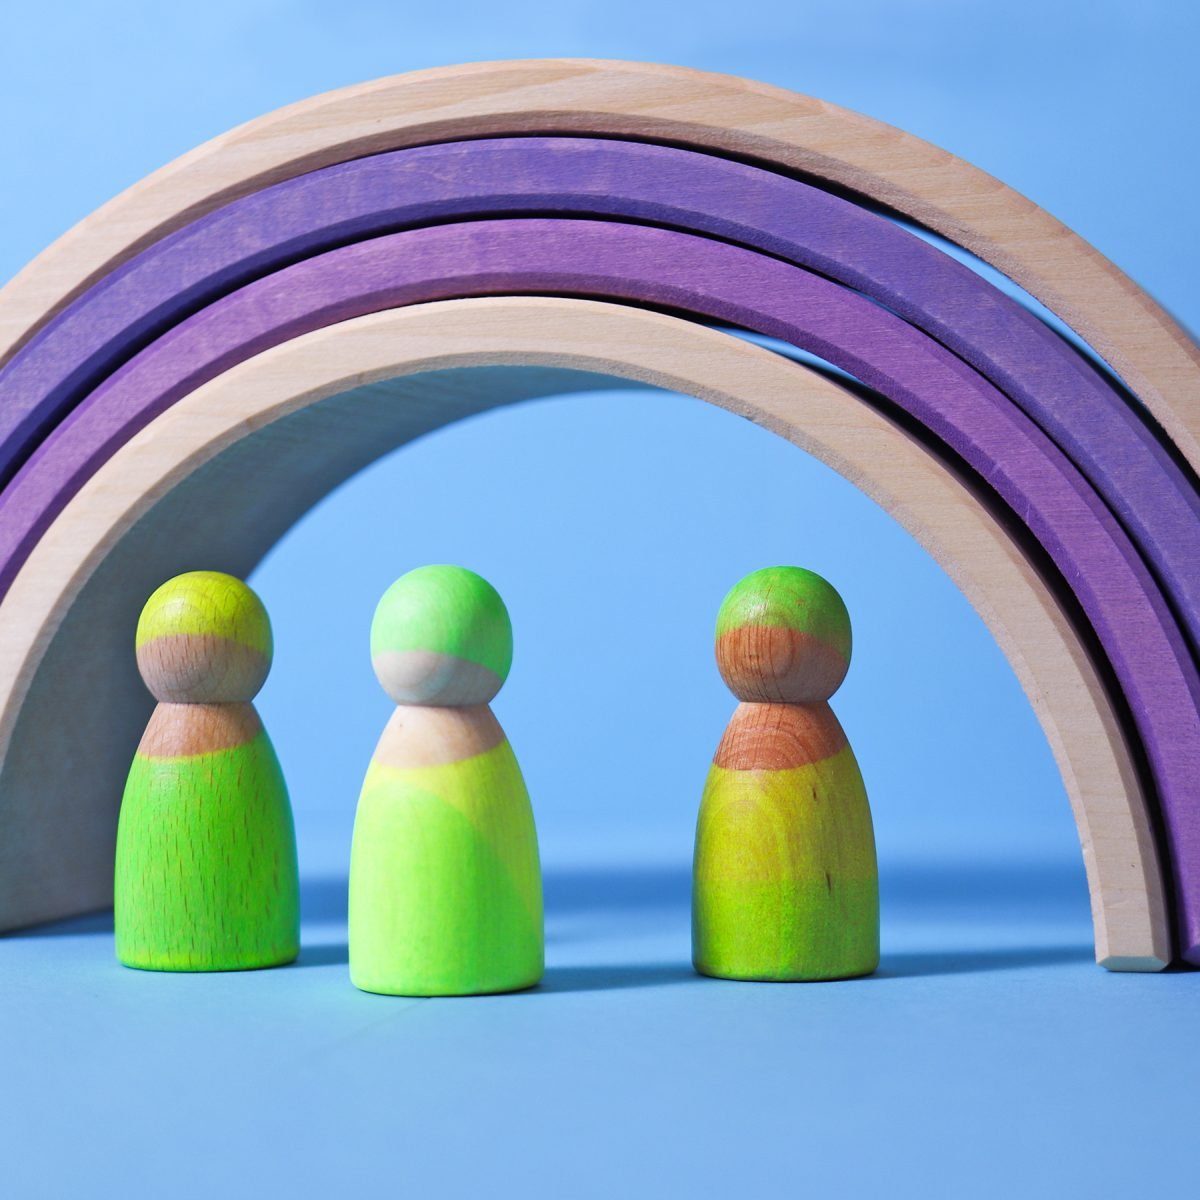 GRIMM´S Spiel und Holz Design Spielbausteine Neonfreunde 3 kleine Spielfiguren aus Holz in Neonfarben